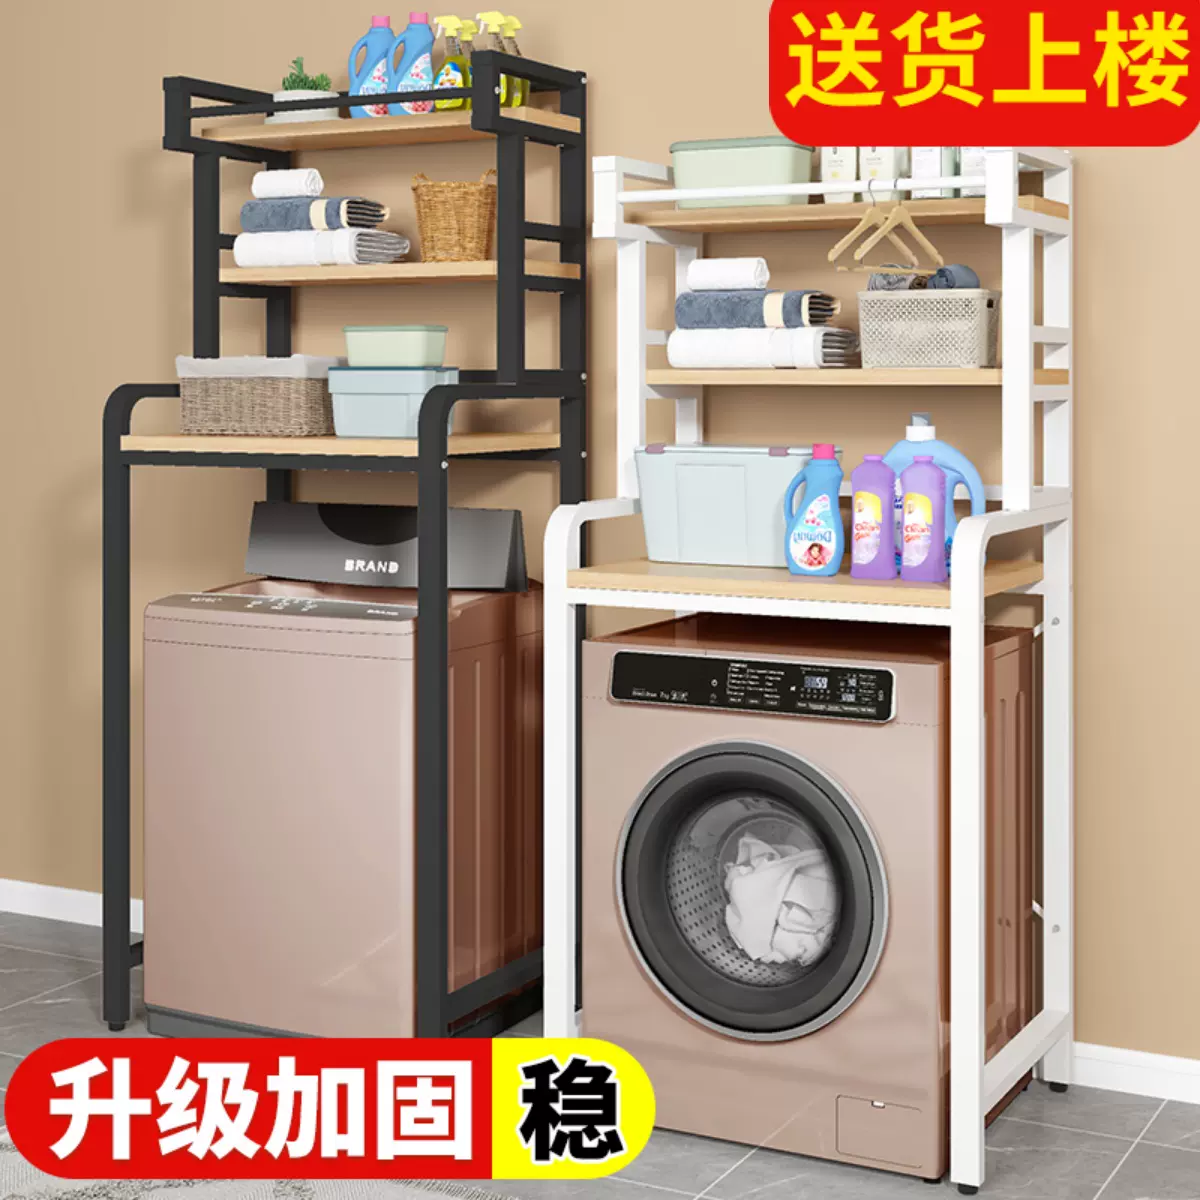 滚筒洗衣机置物架落地上方收纳架卫生间翻盖架子浴室阳台储物架-Taobao